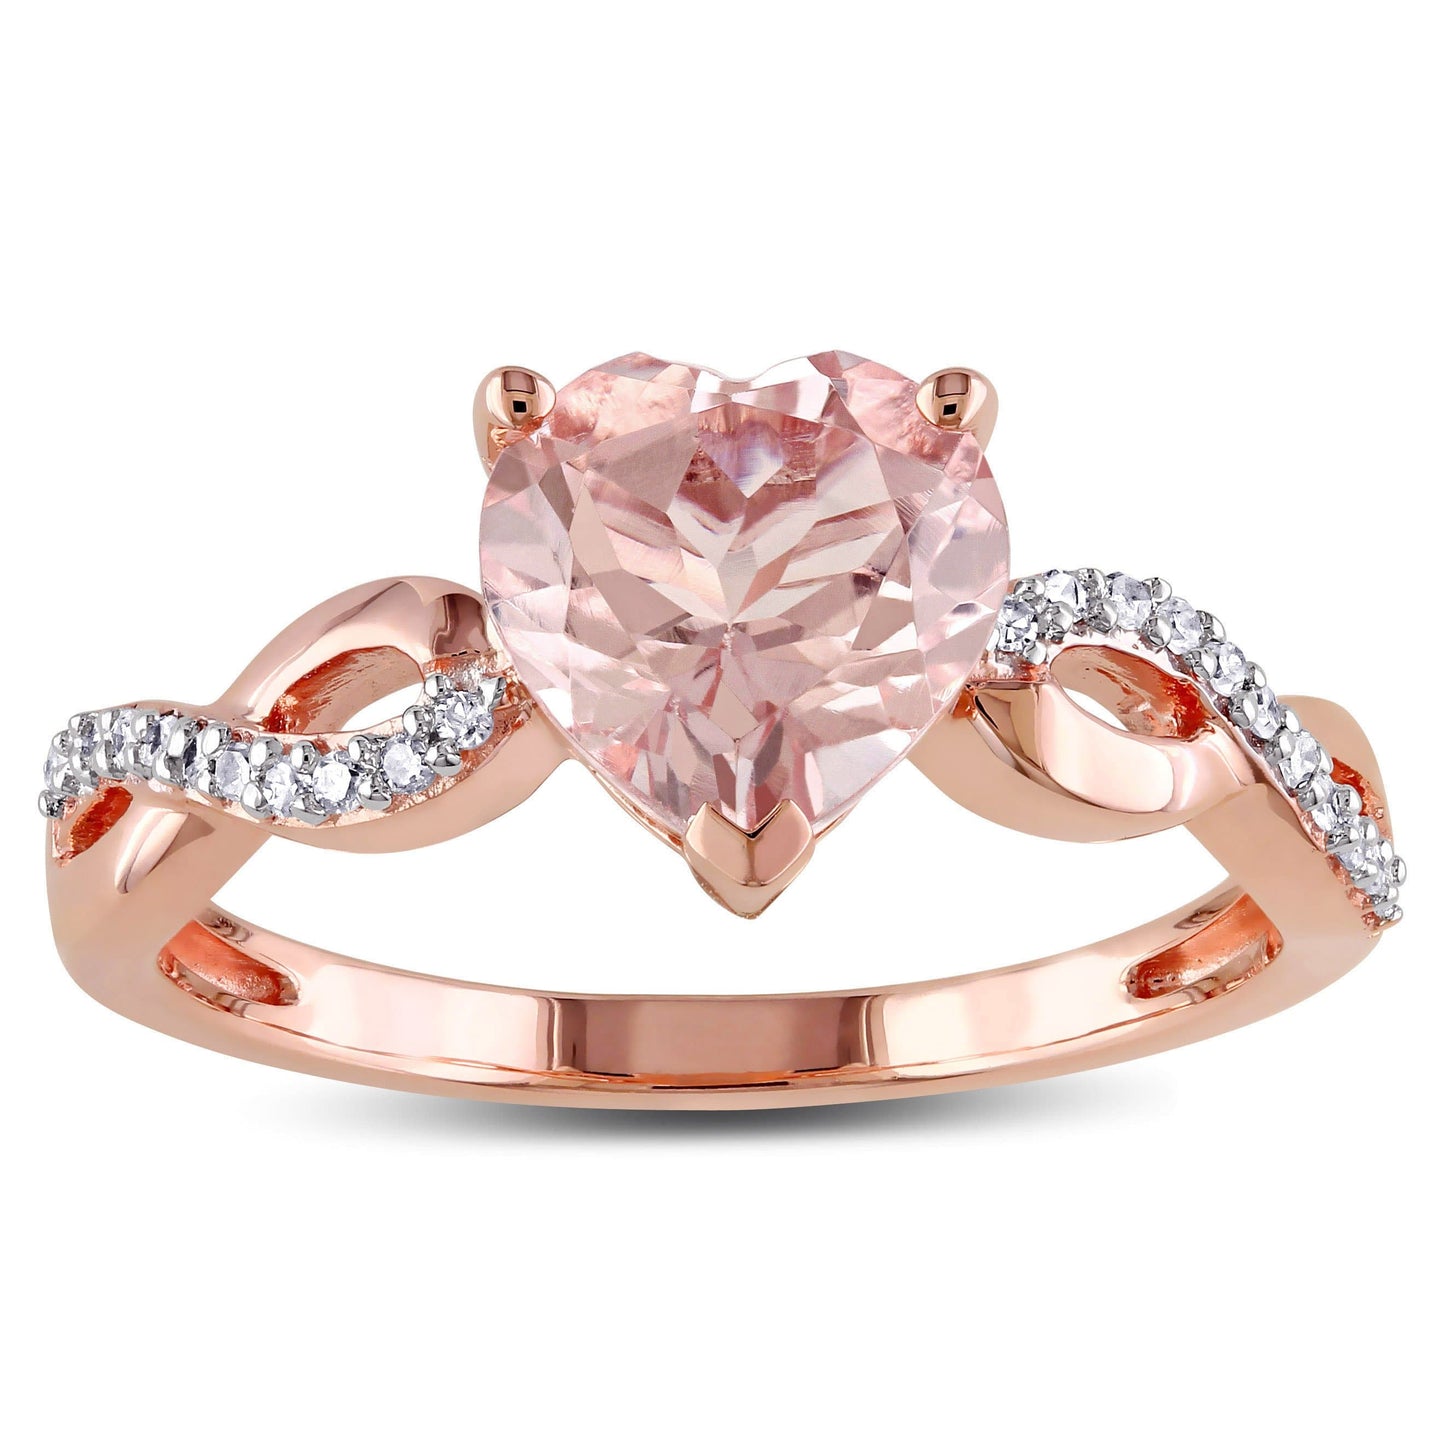 Sophia B Morganite & Diamond Heart Ring in 10k Rose Gold